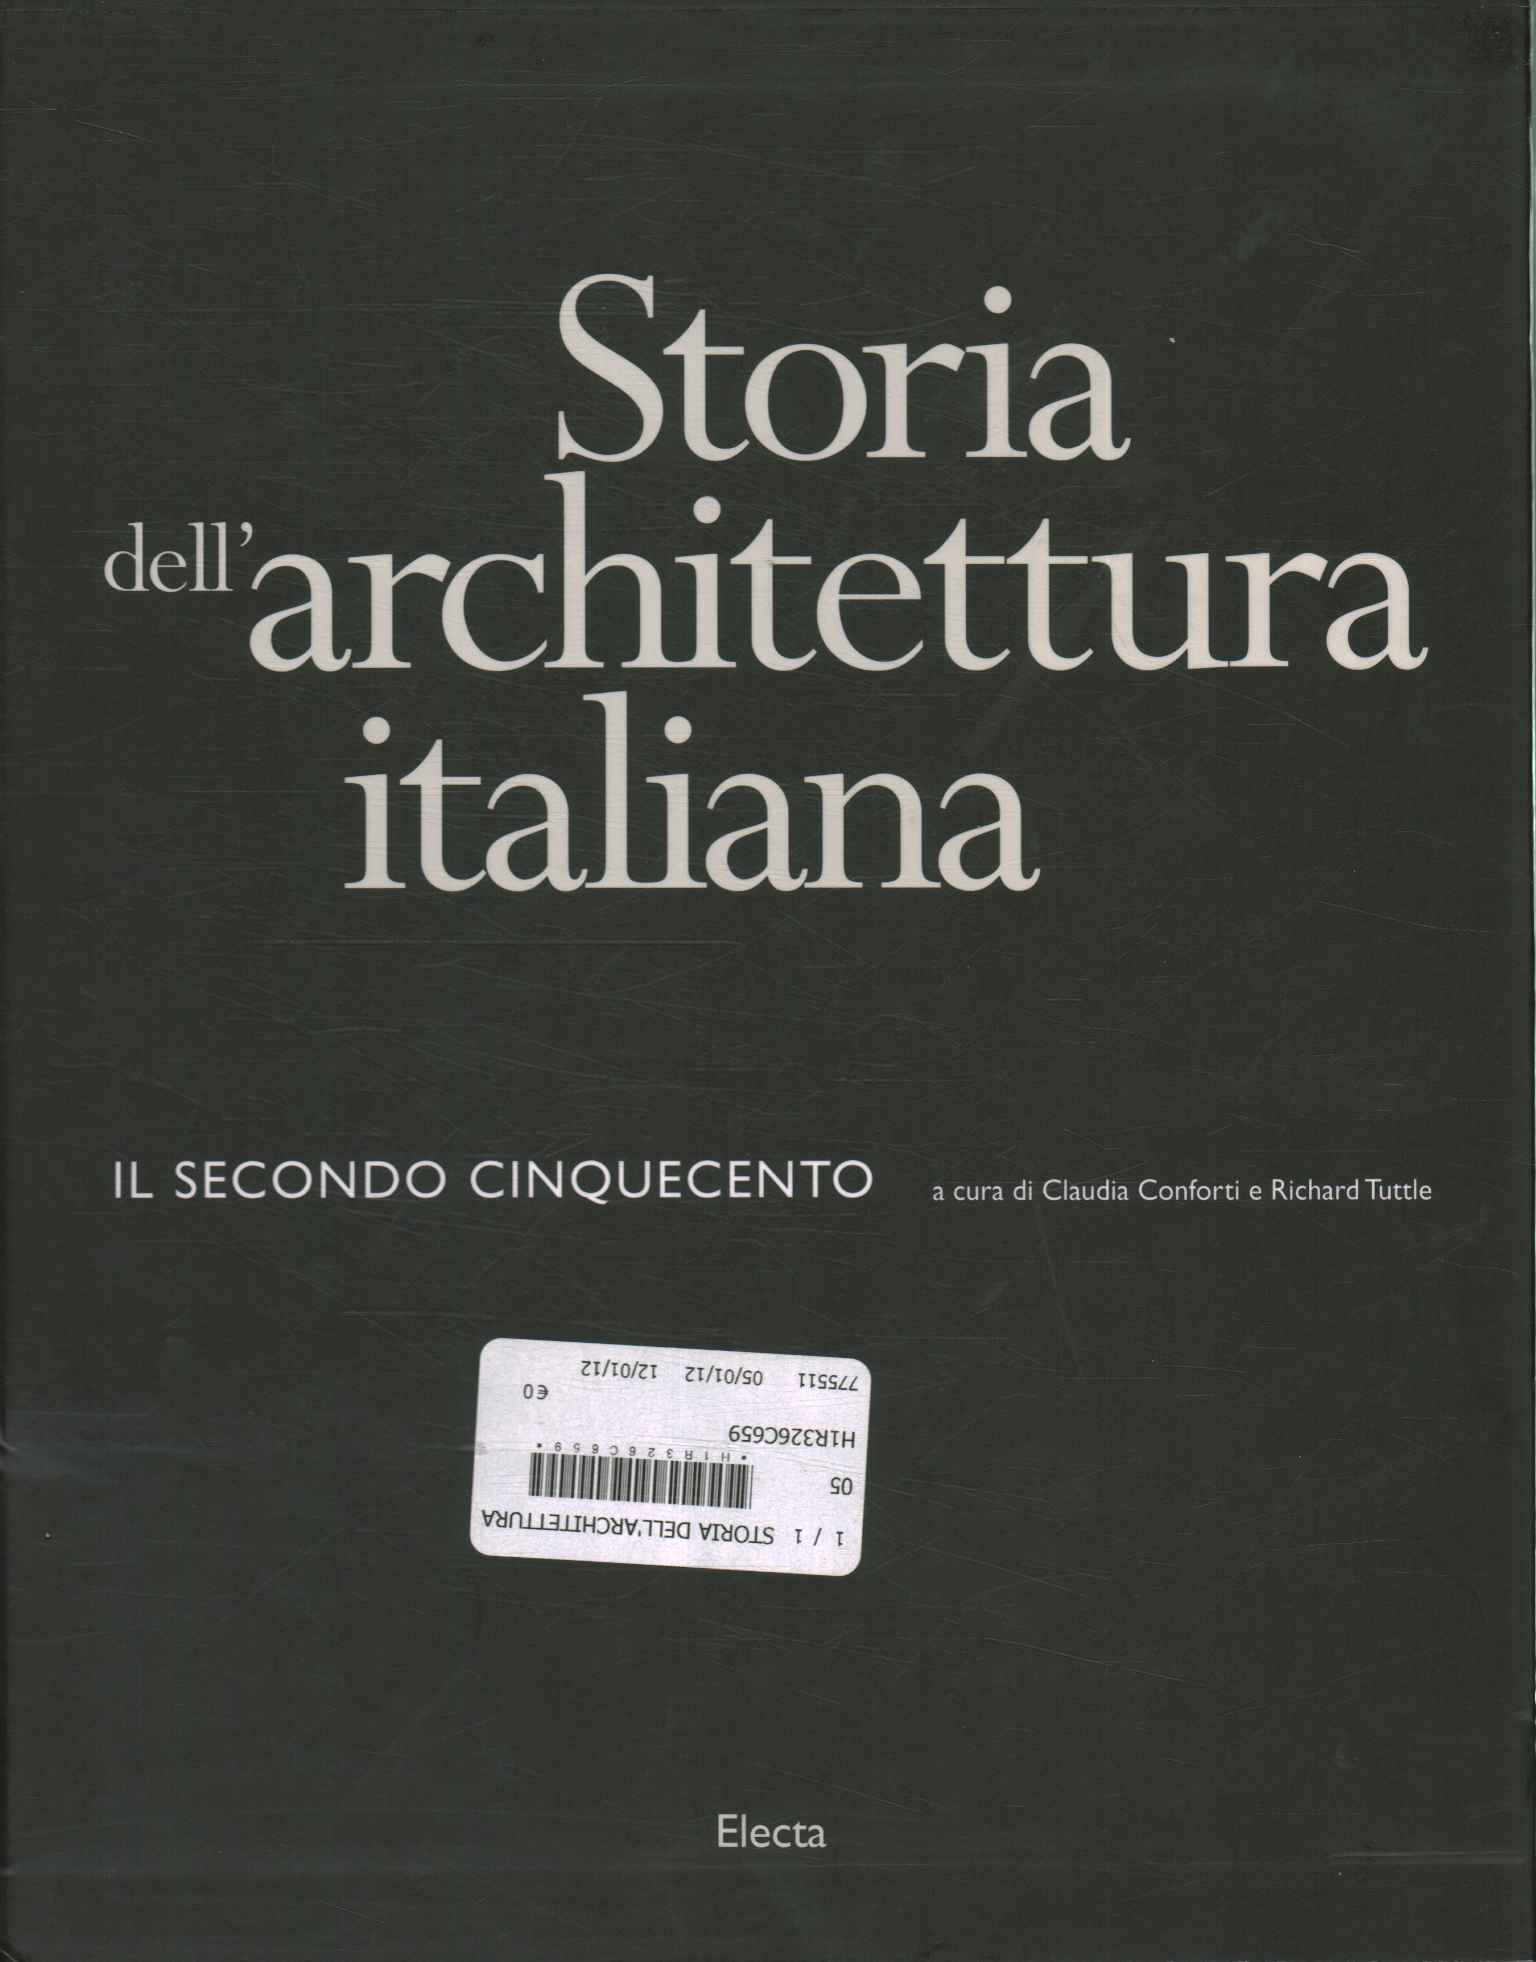 Storia dell'architettura italiana.%,Storia dell'architettura italiana.%,Storia dell'architettura italiana.%,Storia dell'architettura italiana.%